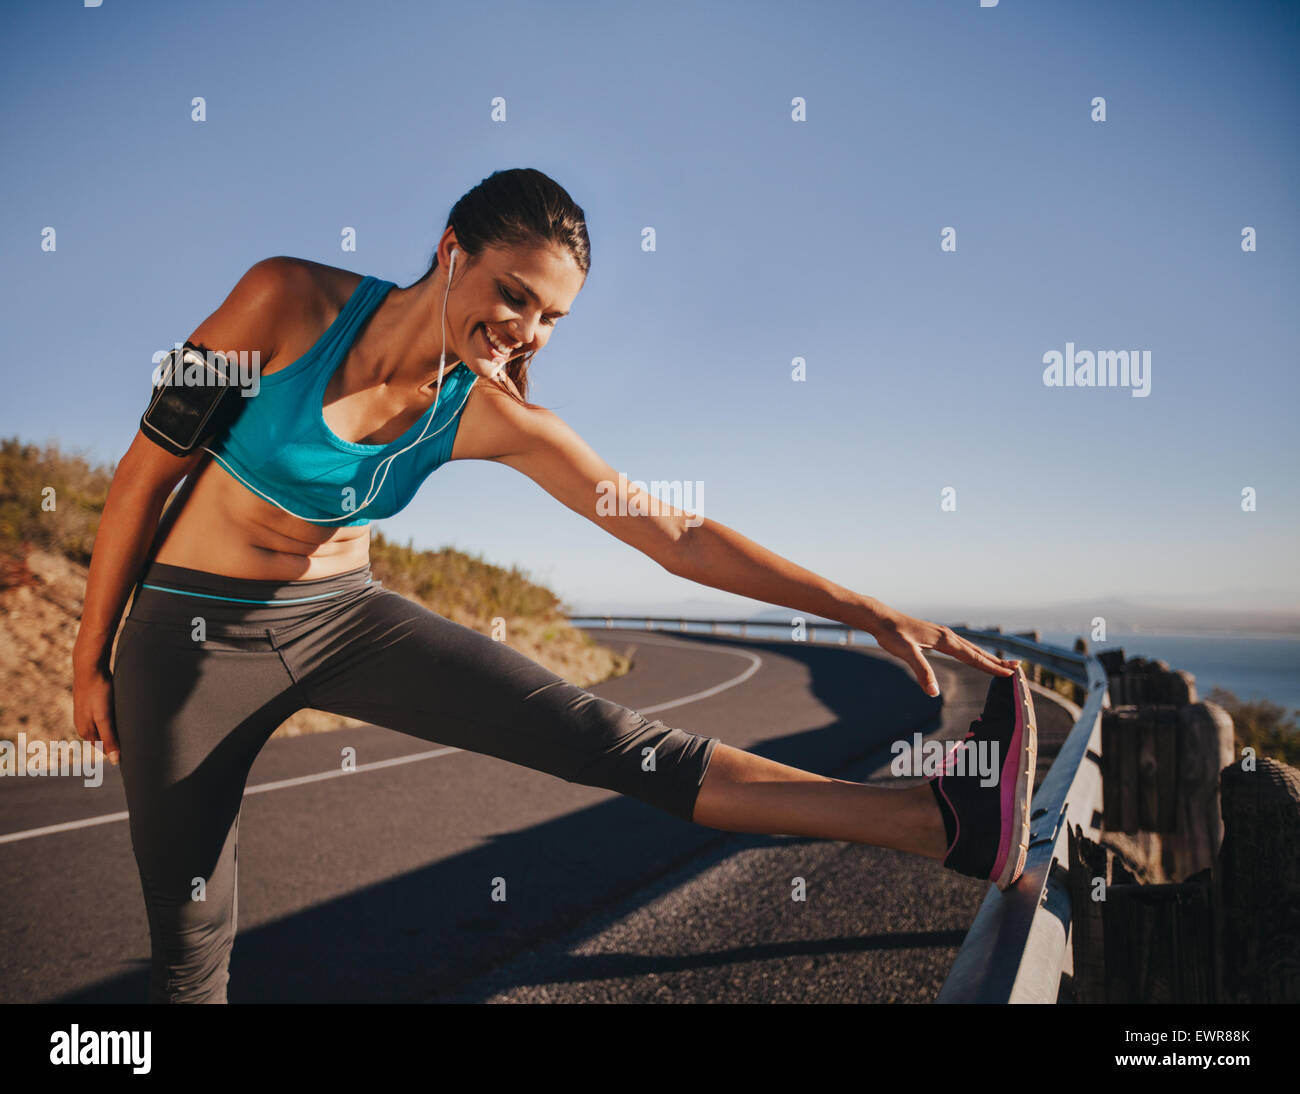 Sportliche Frau dehnen ihr Bein auf einem Geländer vor im freien laufen. Sportlerin, immer bereit für einen Lauf. Stockfoto